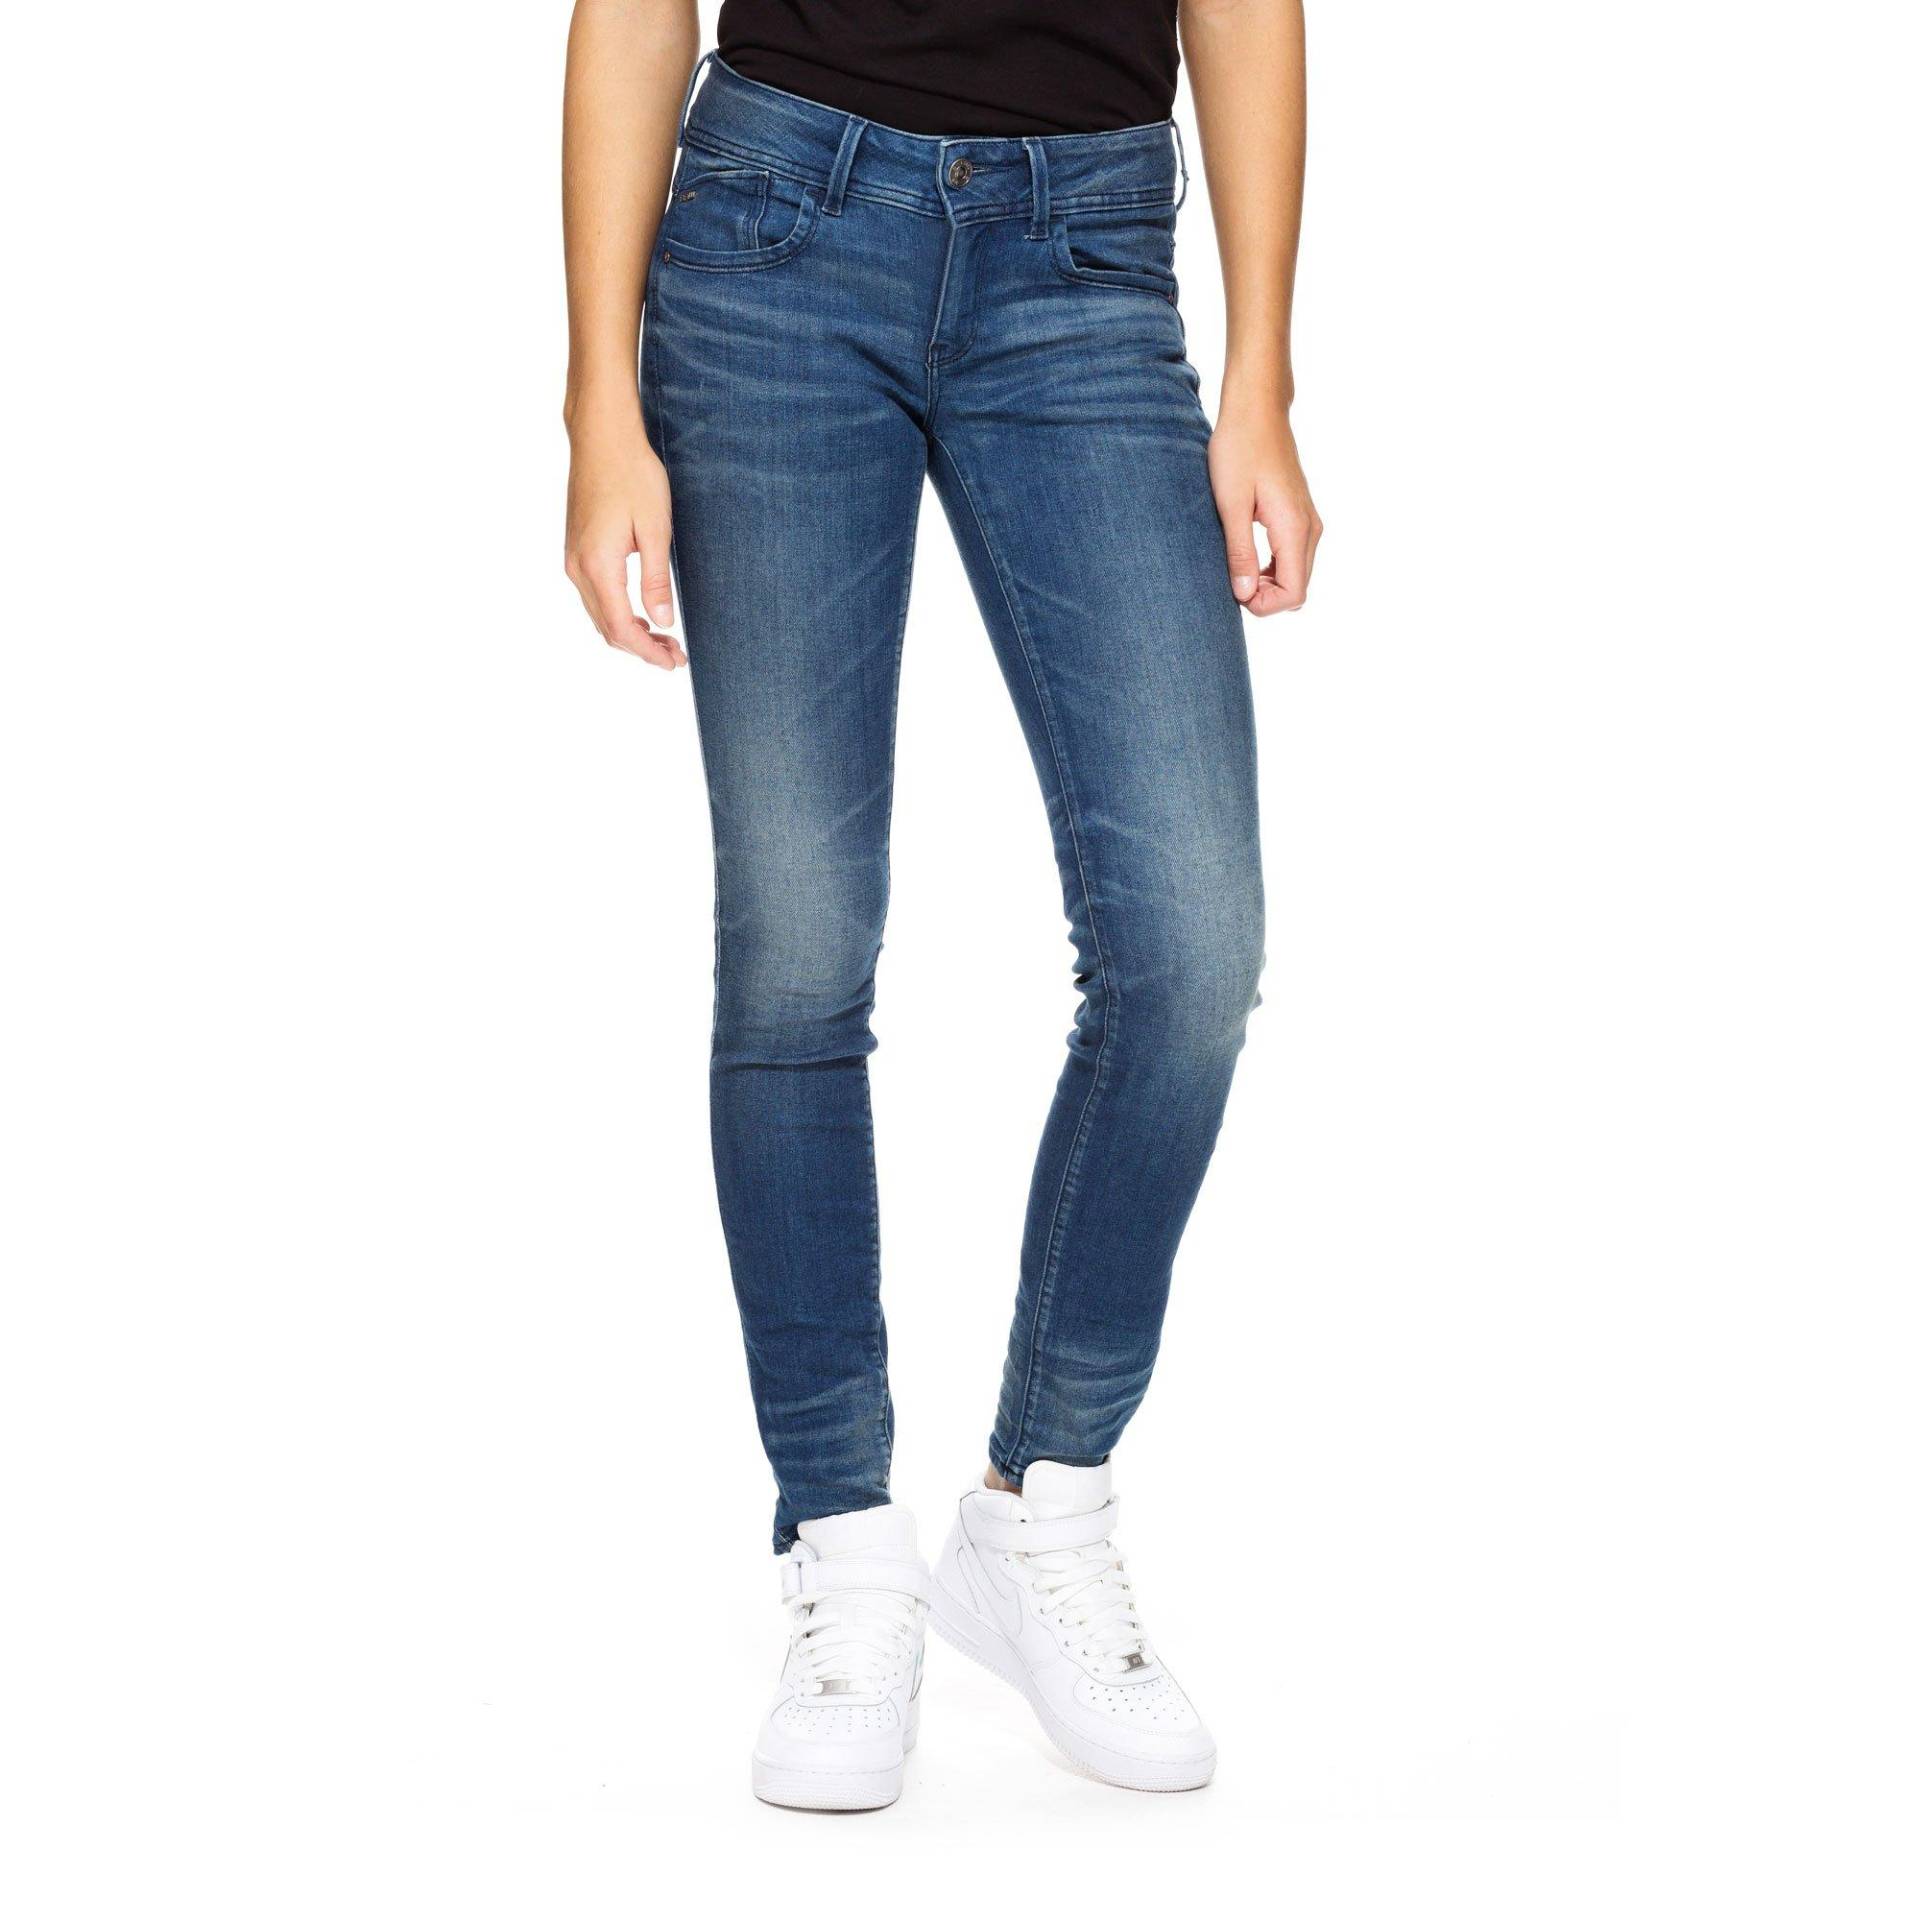 Jeans, Skinny Fit Damen Blau Denim L30/W27 von G-STAR